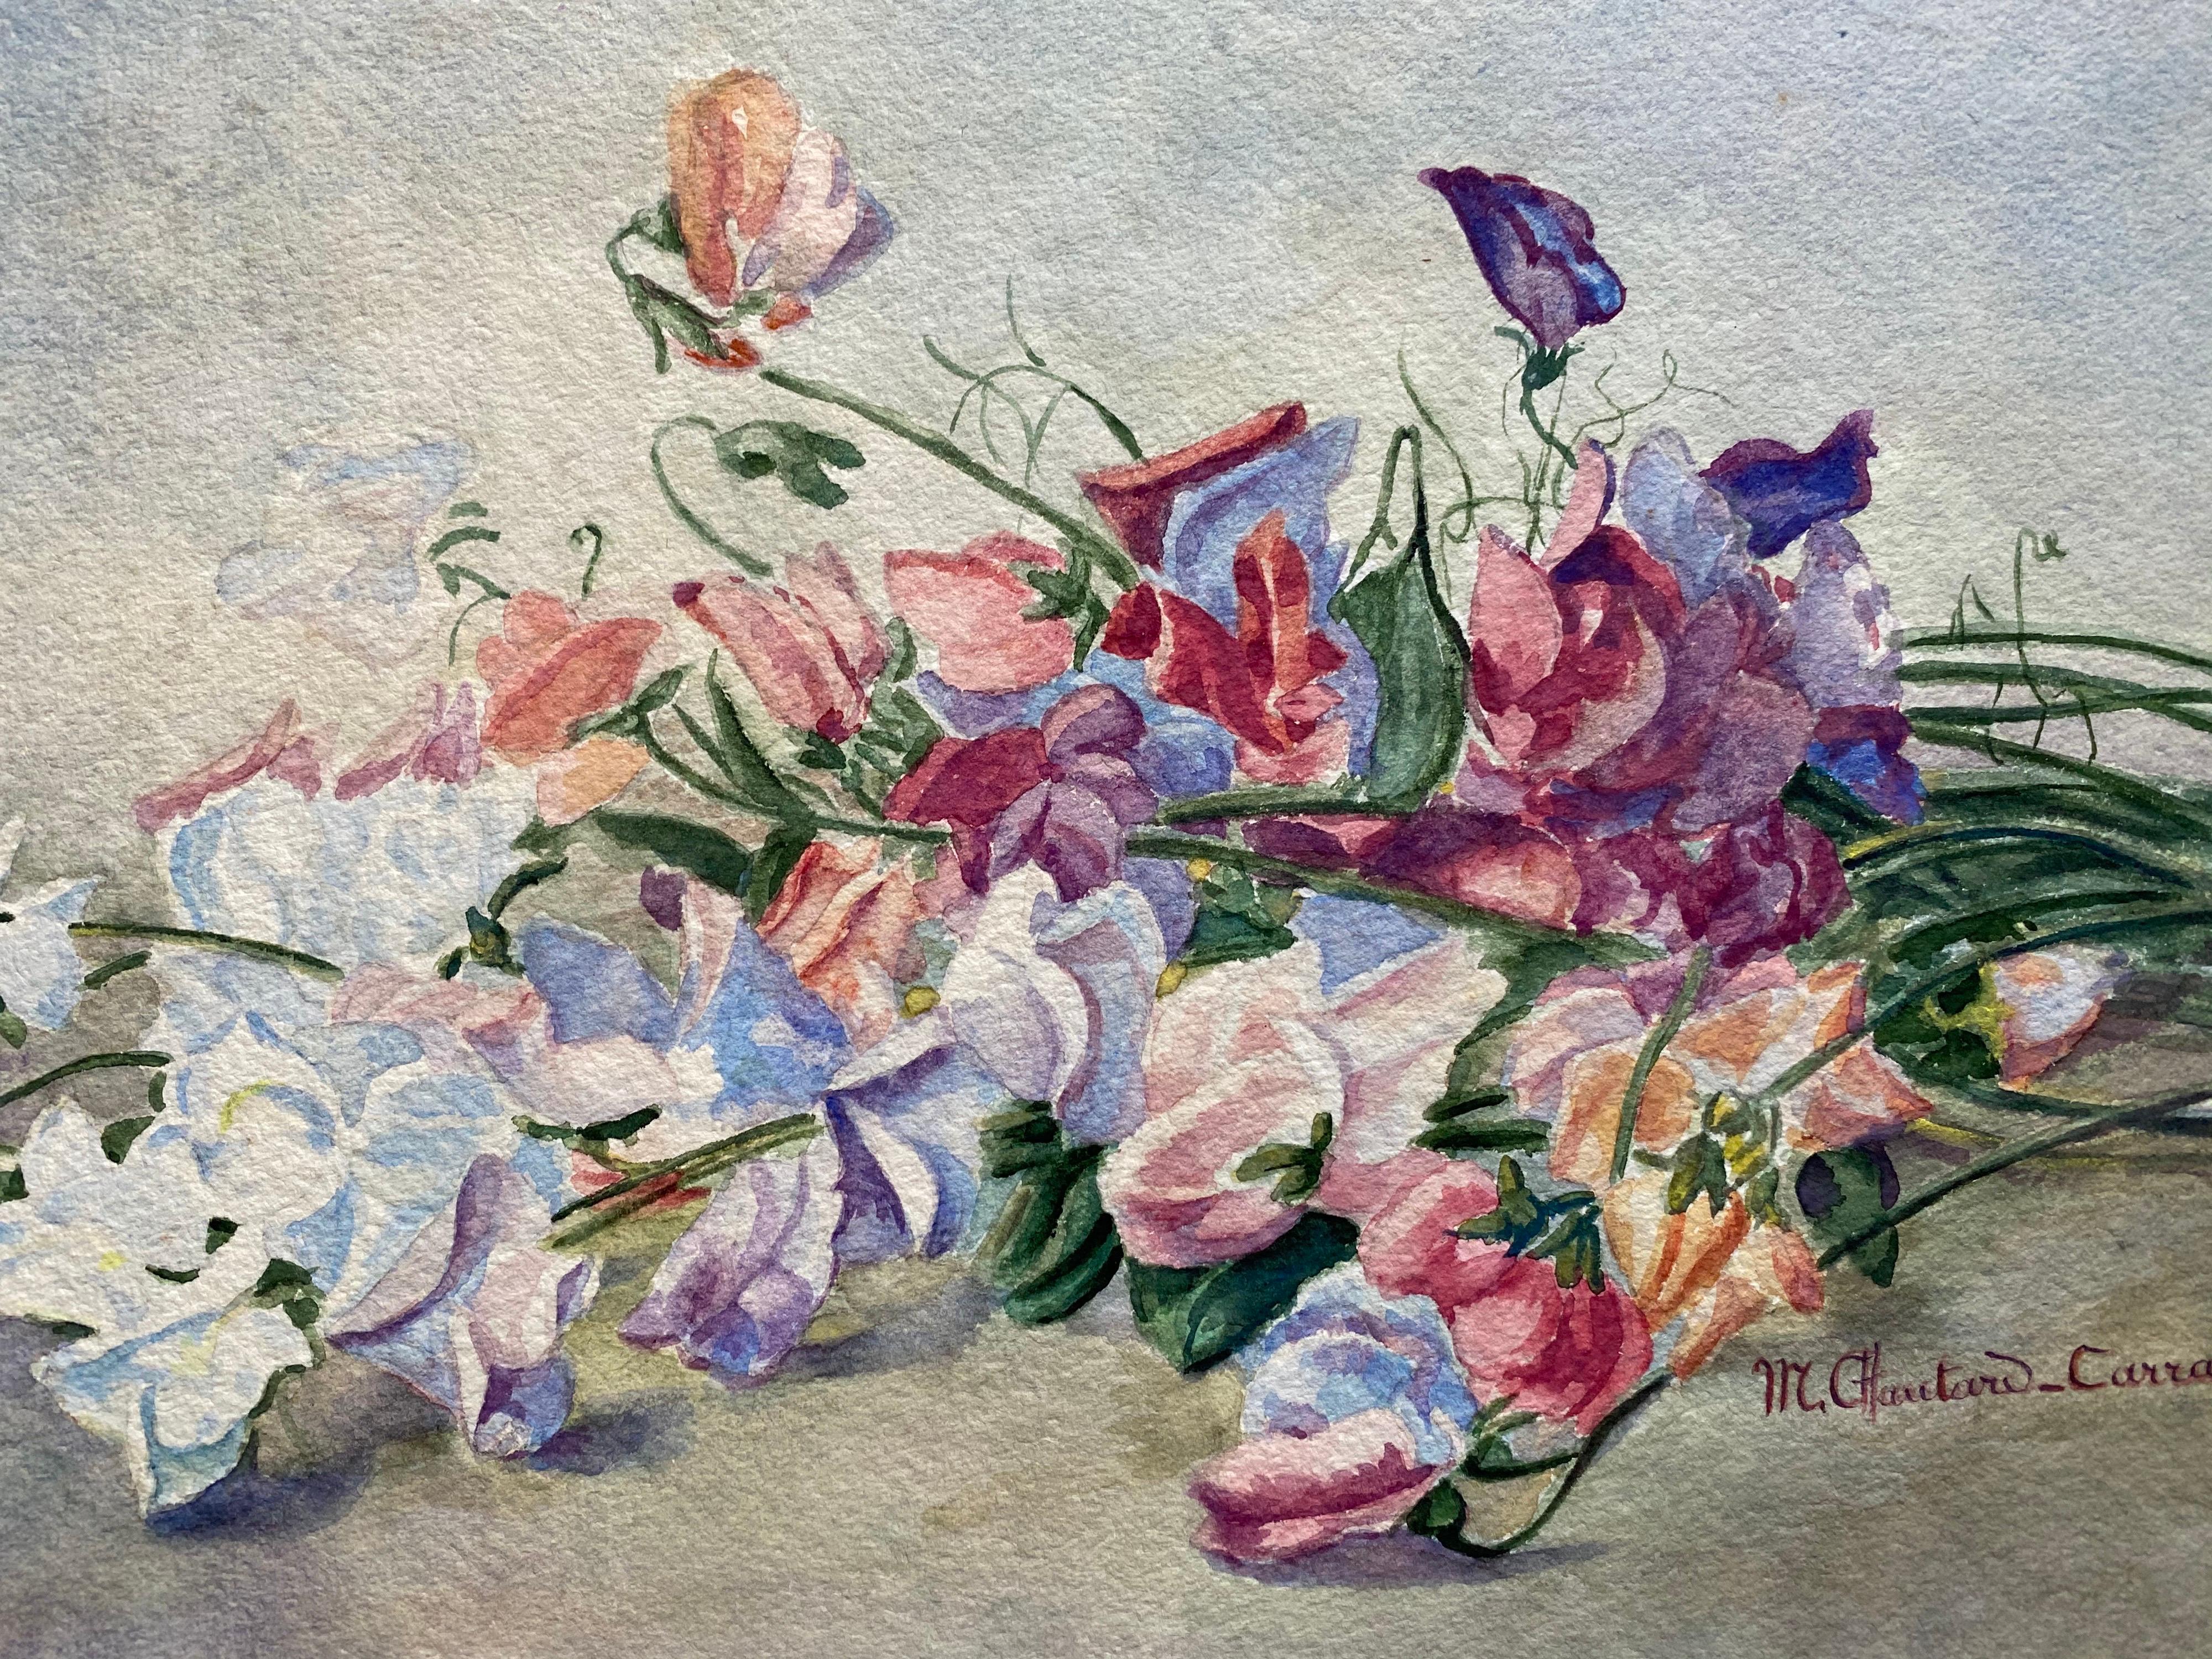 Aquarelle à fleurs signée de Marie Carreau, impressionniste française, début des années 1900 - Art de Marie-Amelie Chautard-Carreau